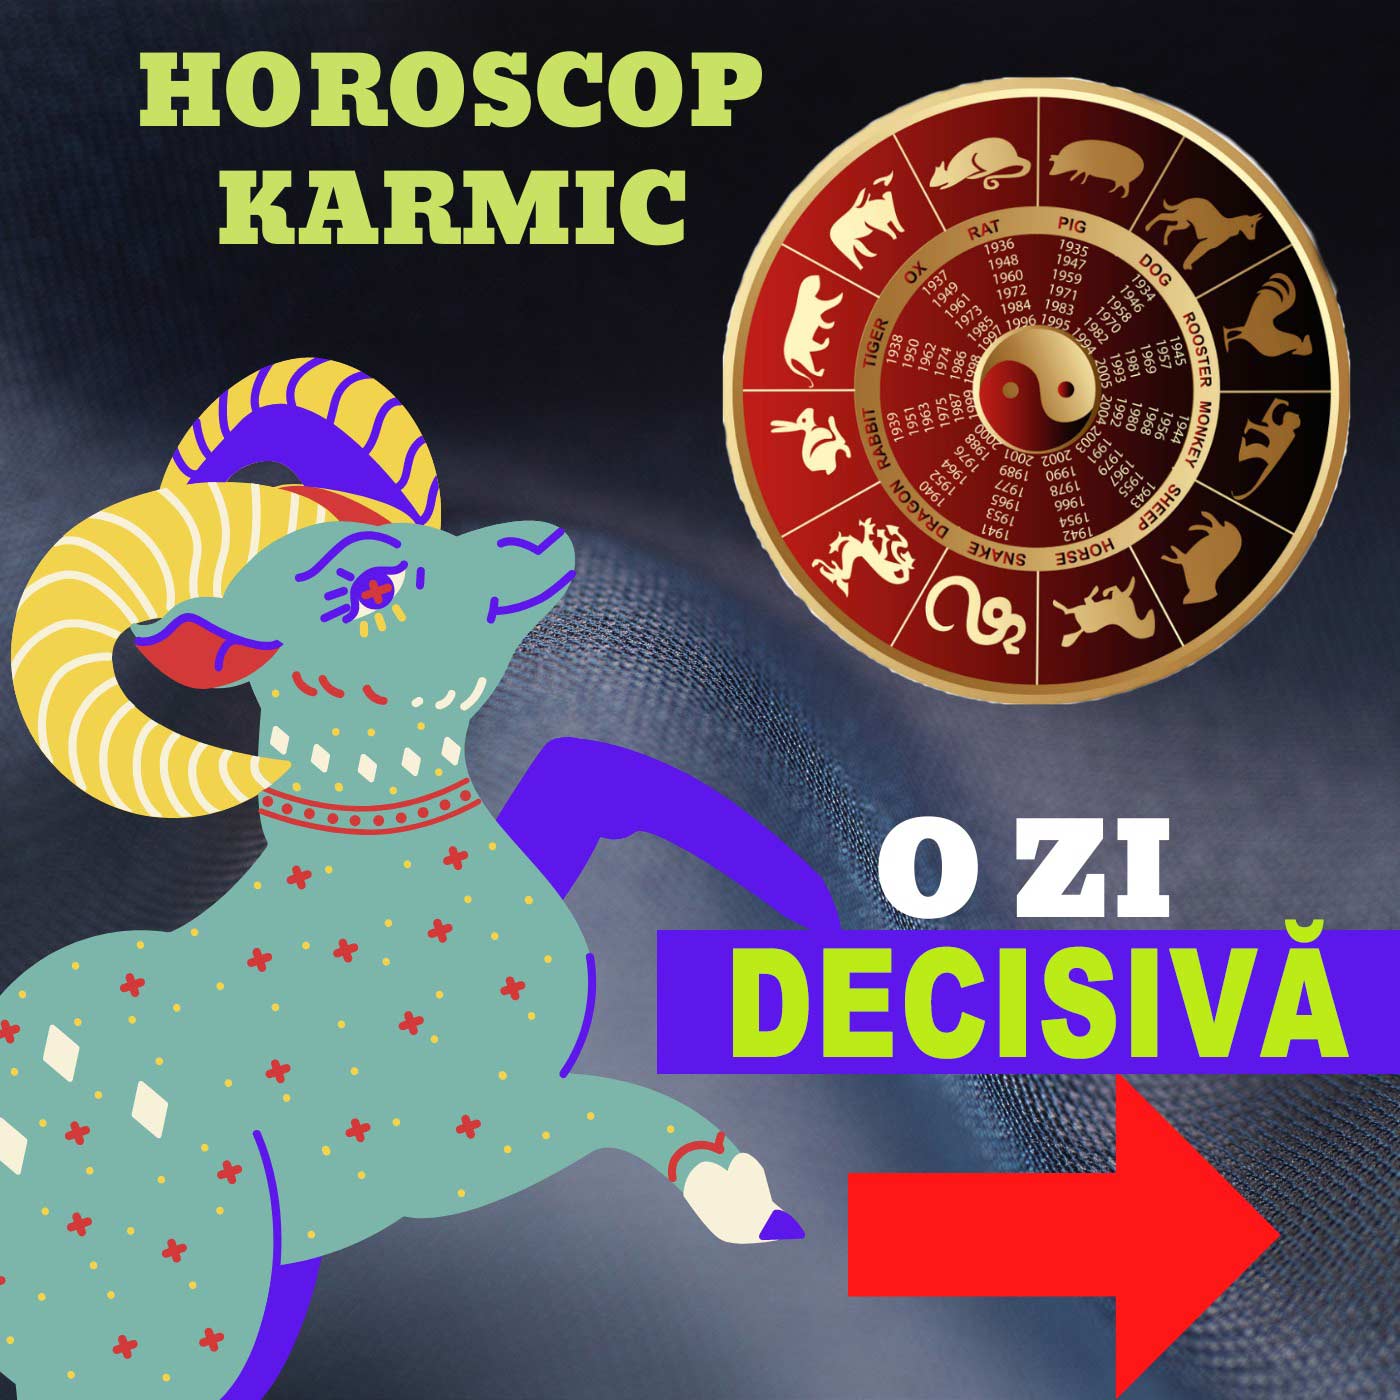 Analiza karmică detaliată pentru fiecare zodie: Înțelege cum te influențează karma și ce te așteaptă